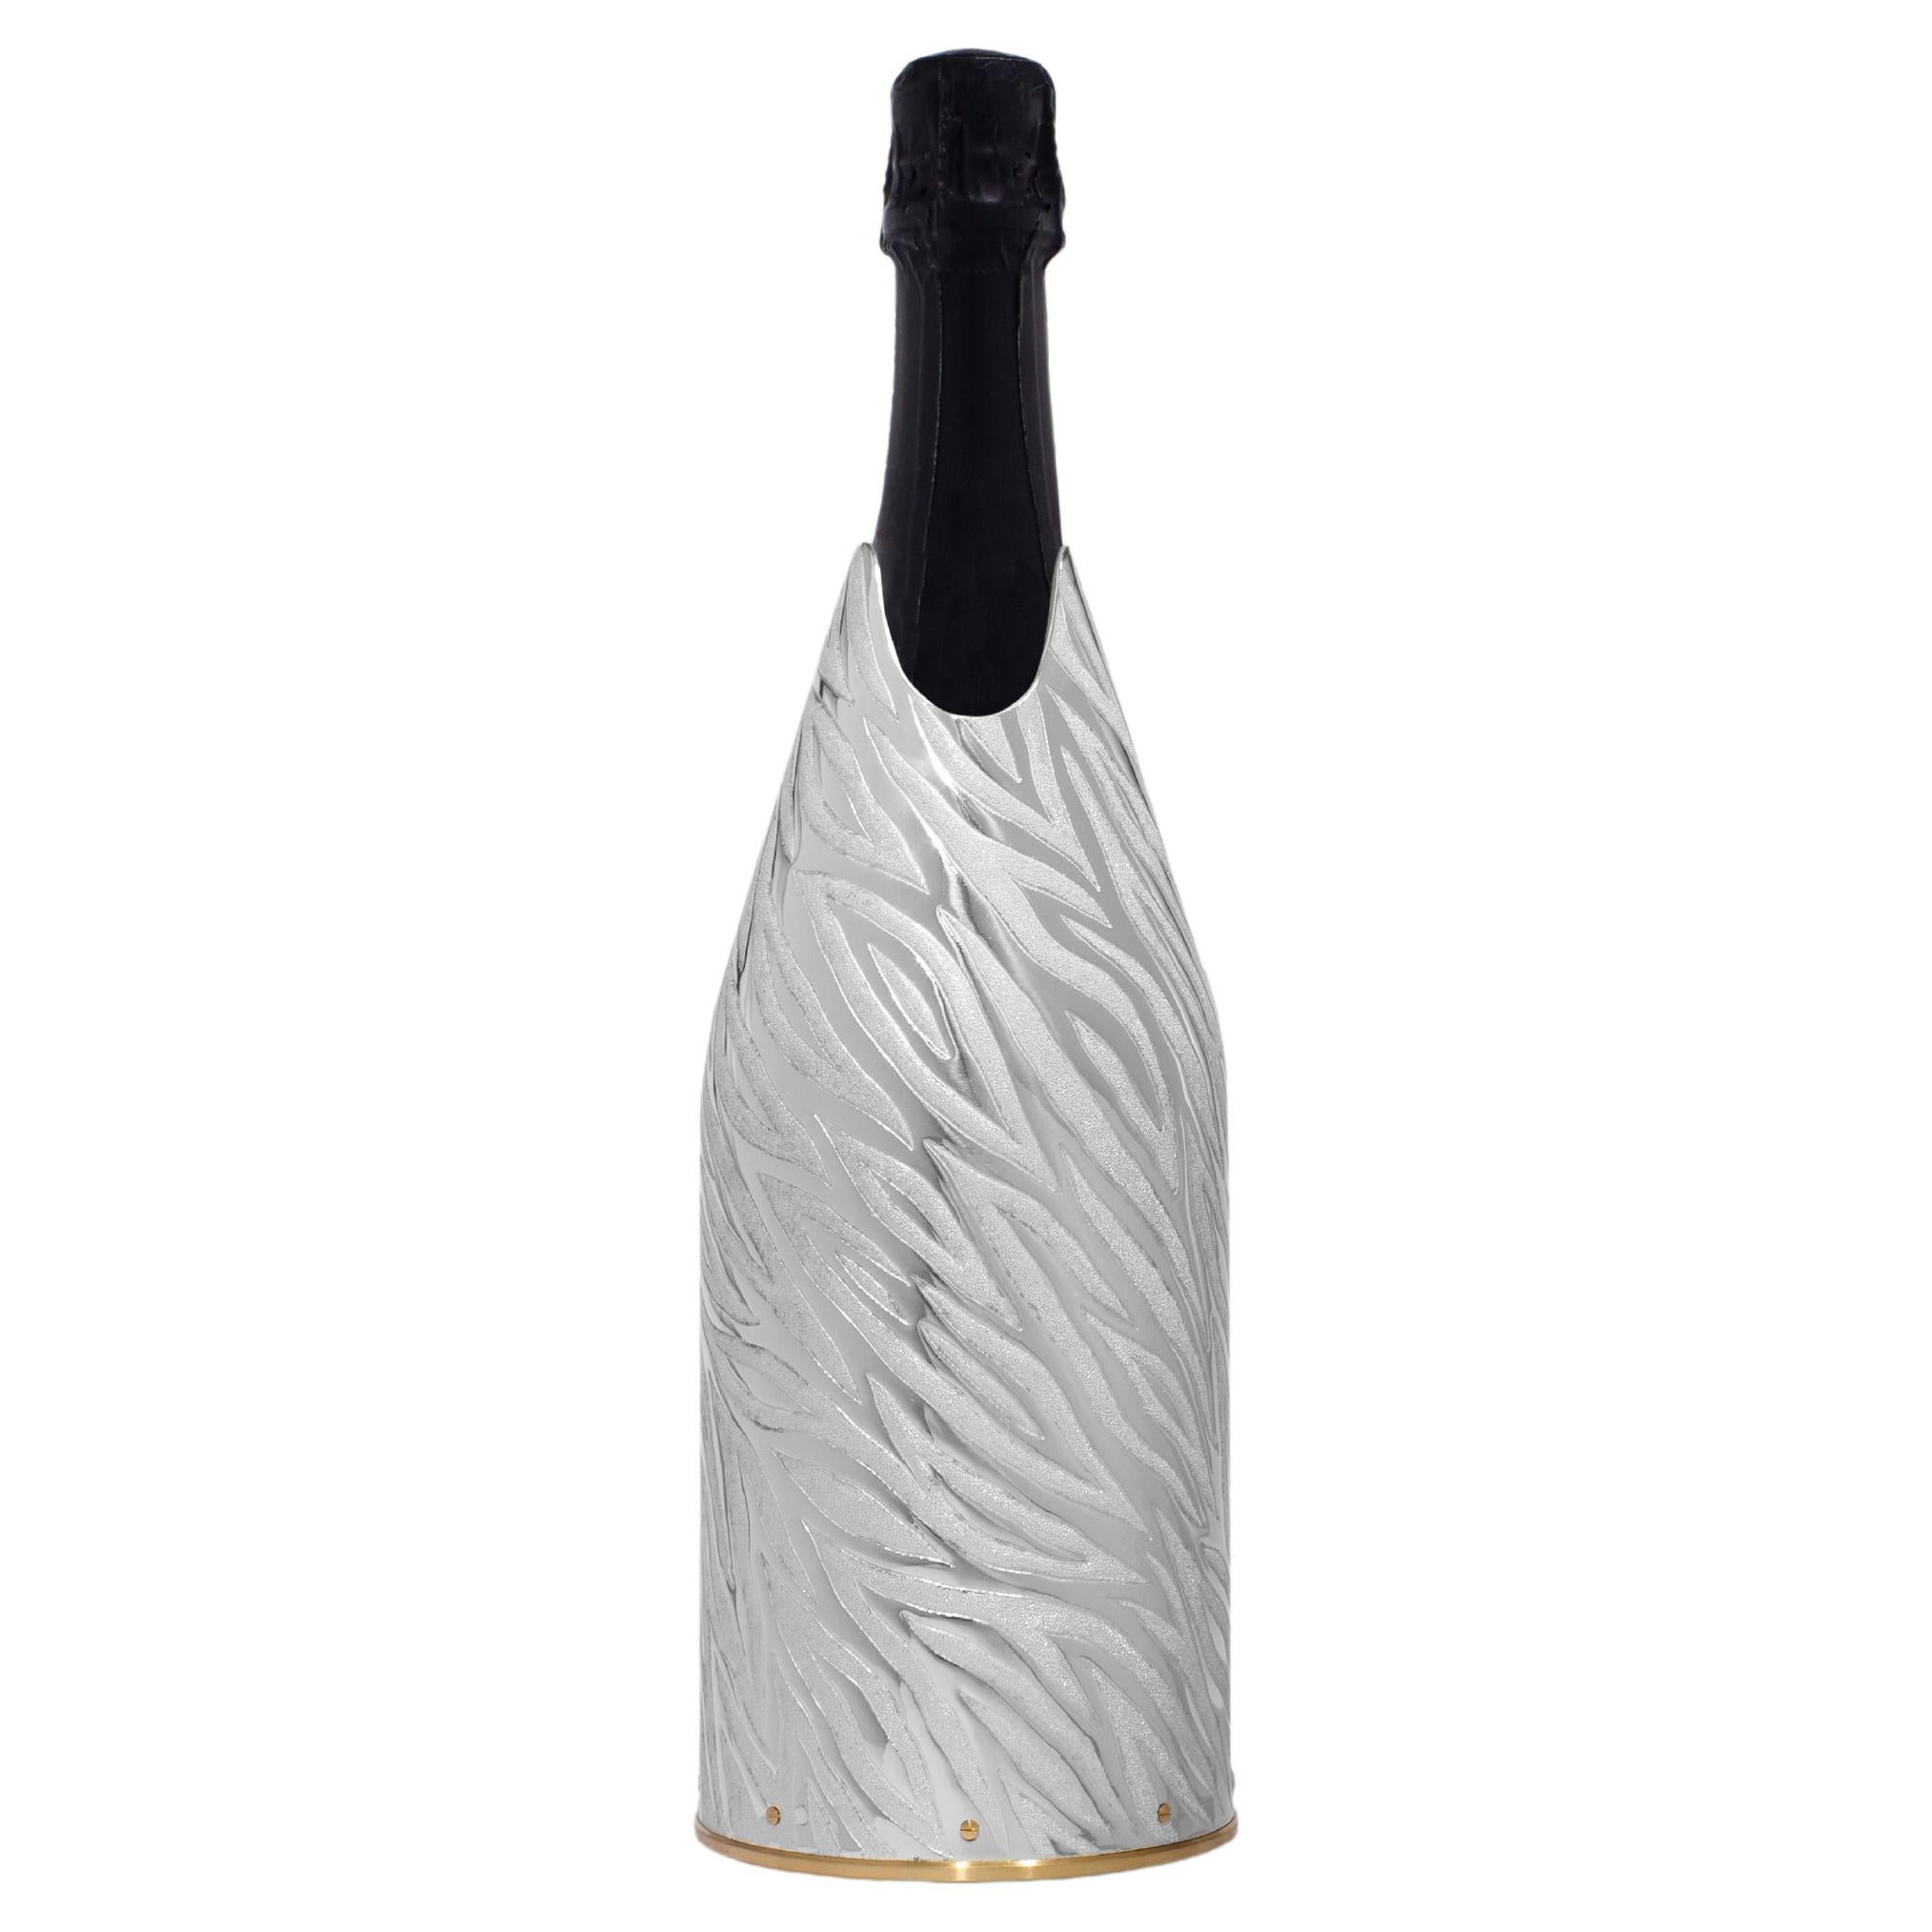 Ce K-Over en argent pur 999/°° champagne appartient à notre collection K-OVER Design.  
 
Le K-OVER a été fabriqué à la main par Marco Fedi, un maître orfèvre florentin.
Les techniques utilisées pour ce K-OVER sont la gravure, le ciselage. Le